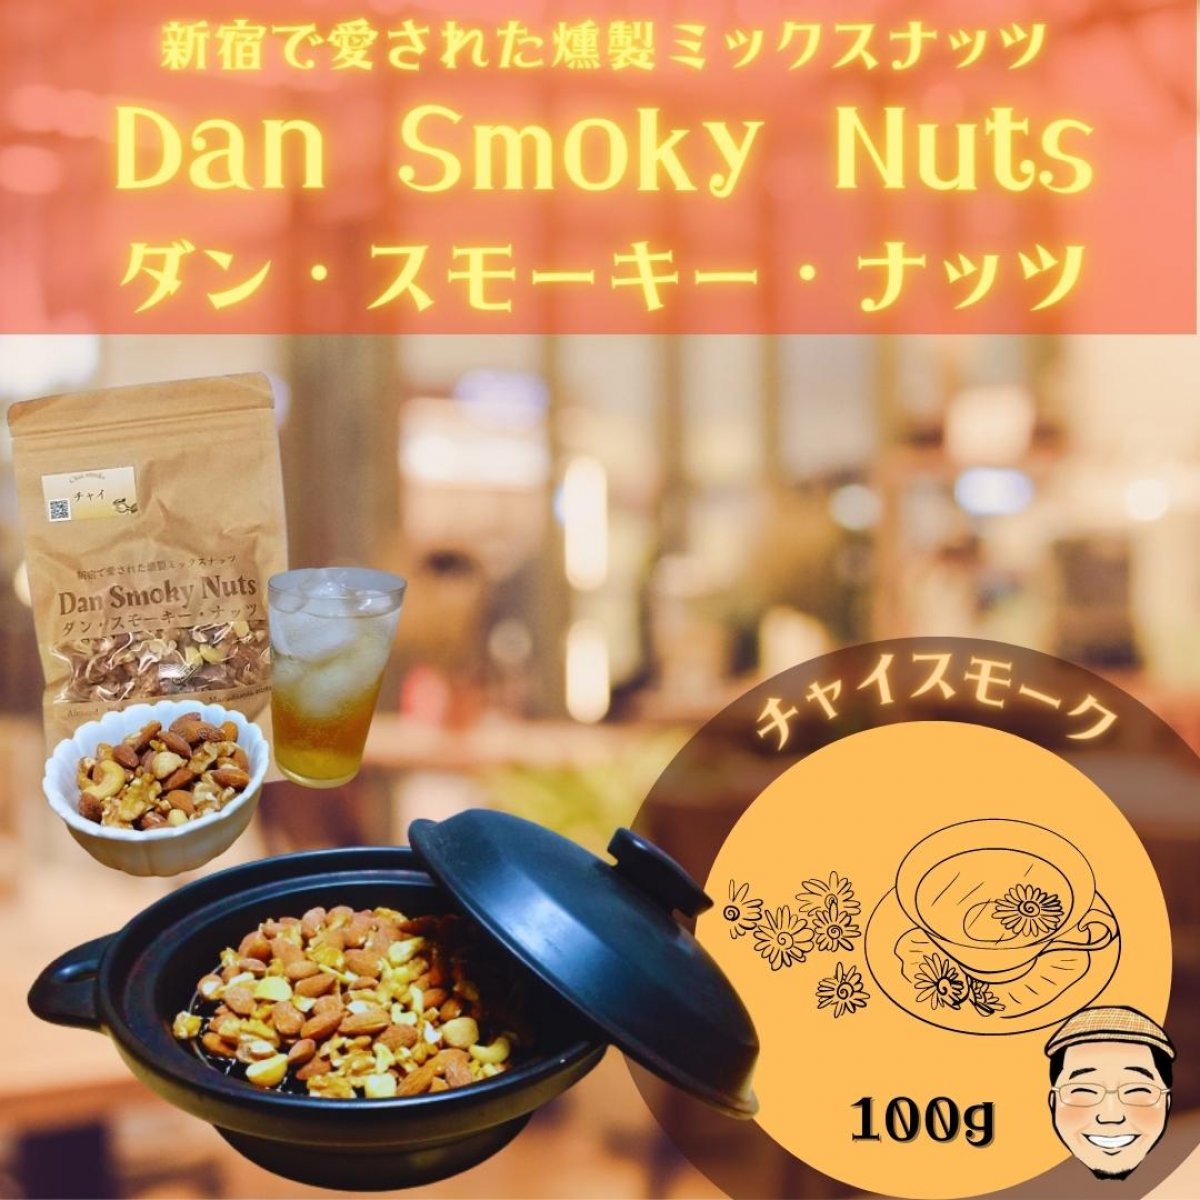 《チャイ》100g【送料無料】新宿で愛された燻製ミックスナッツ〜Dan・Smoky・Nuts〜